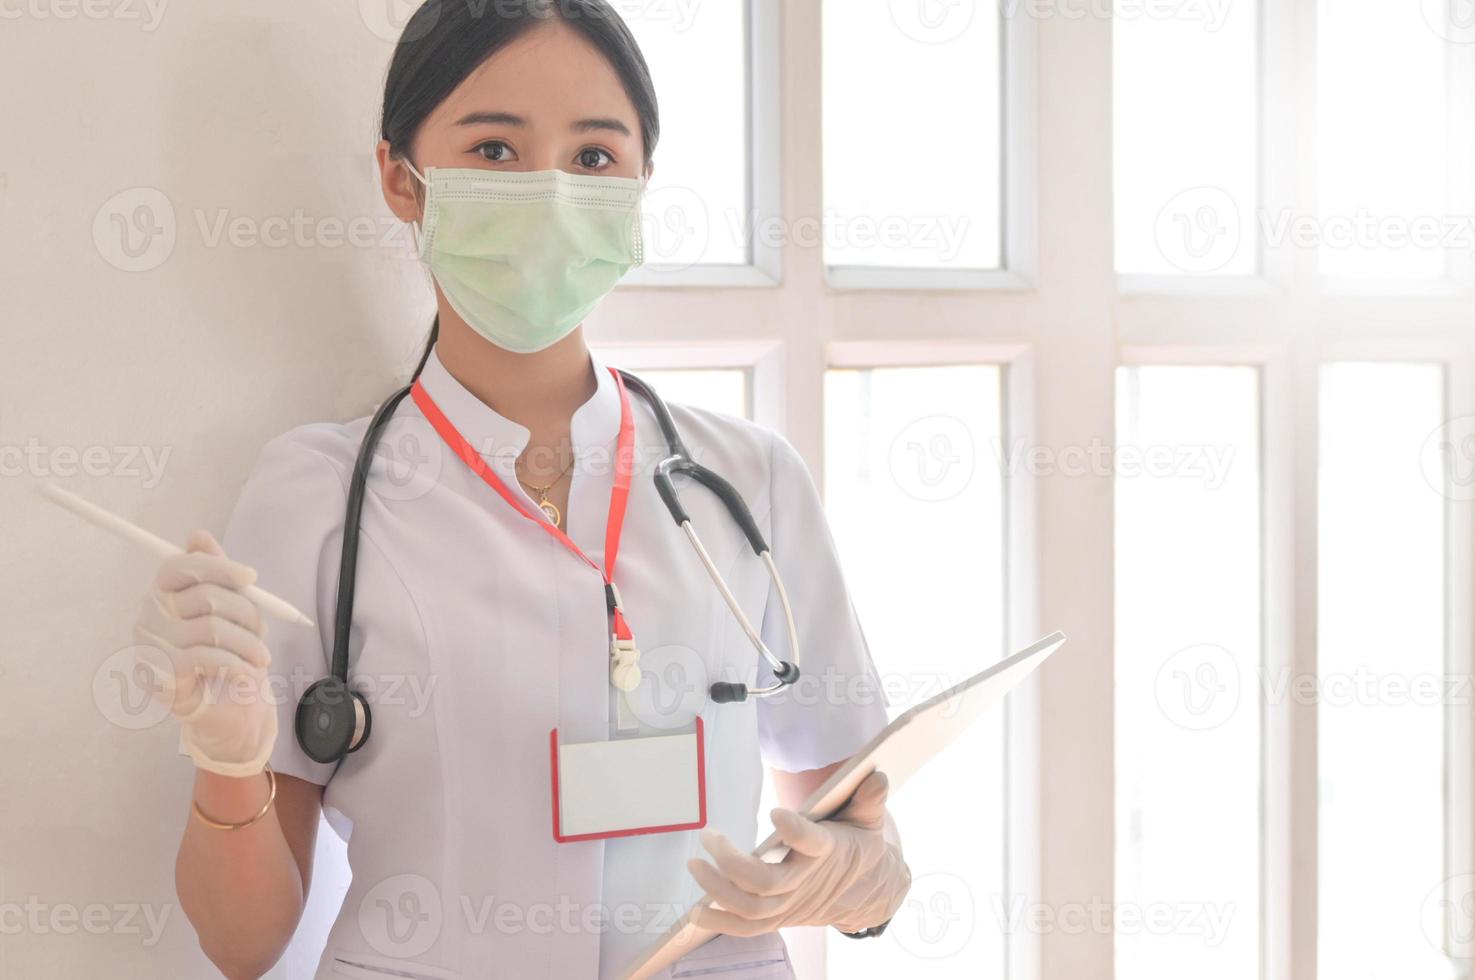 een vrouwelijke arts die een masker draagt, houdt een patiëntendossier vast met een stethoscoop. foto